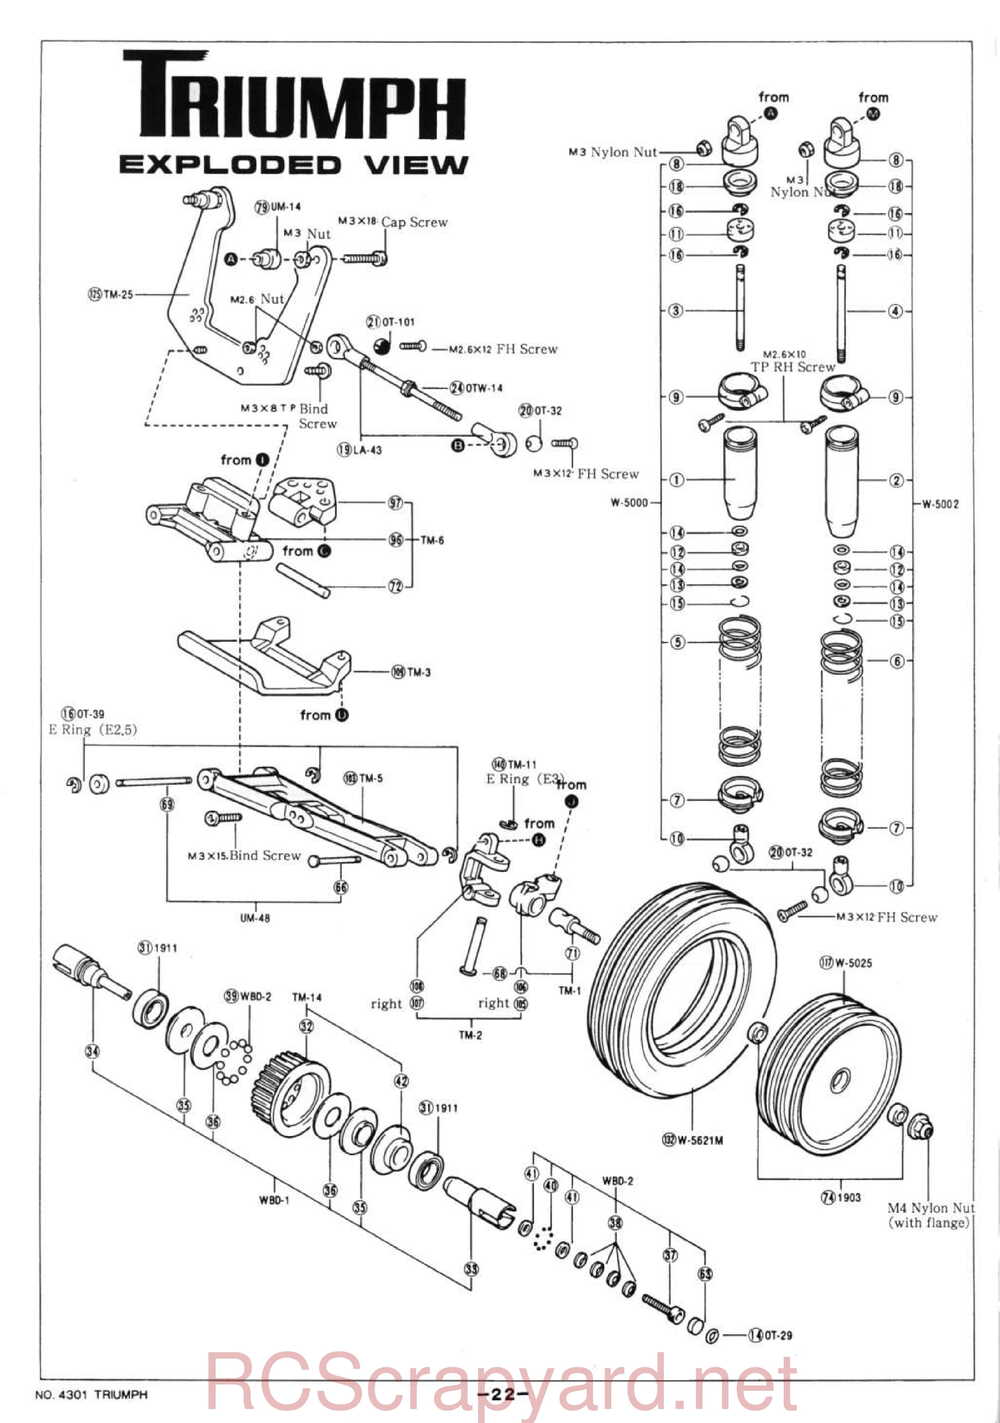 Kyosho - 4301 - Triumph - Manual - Page 22